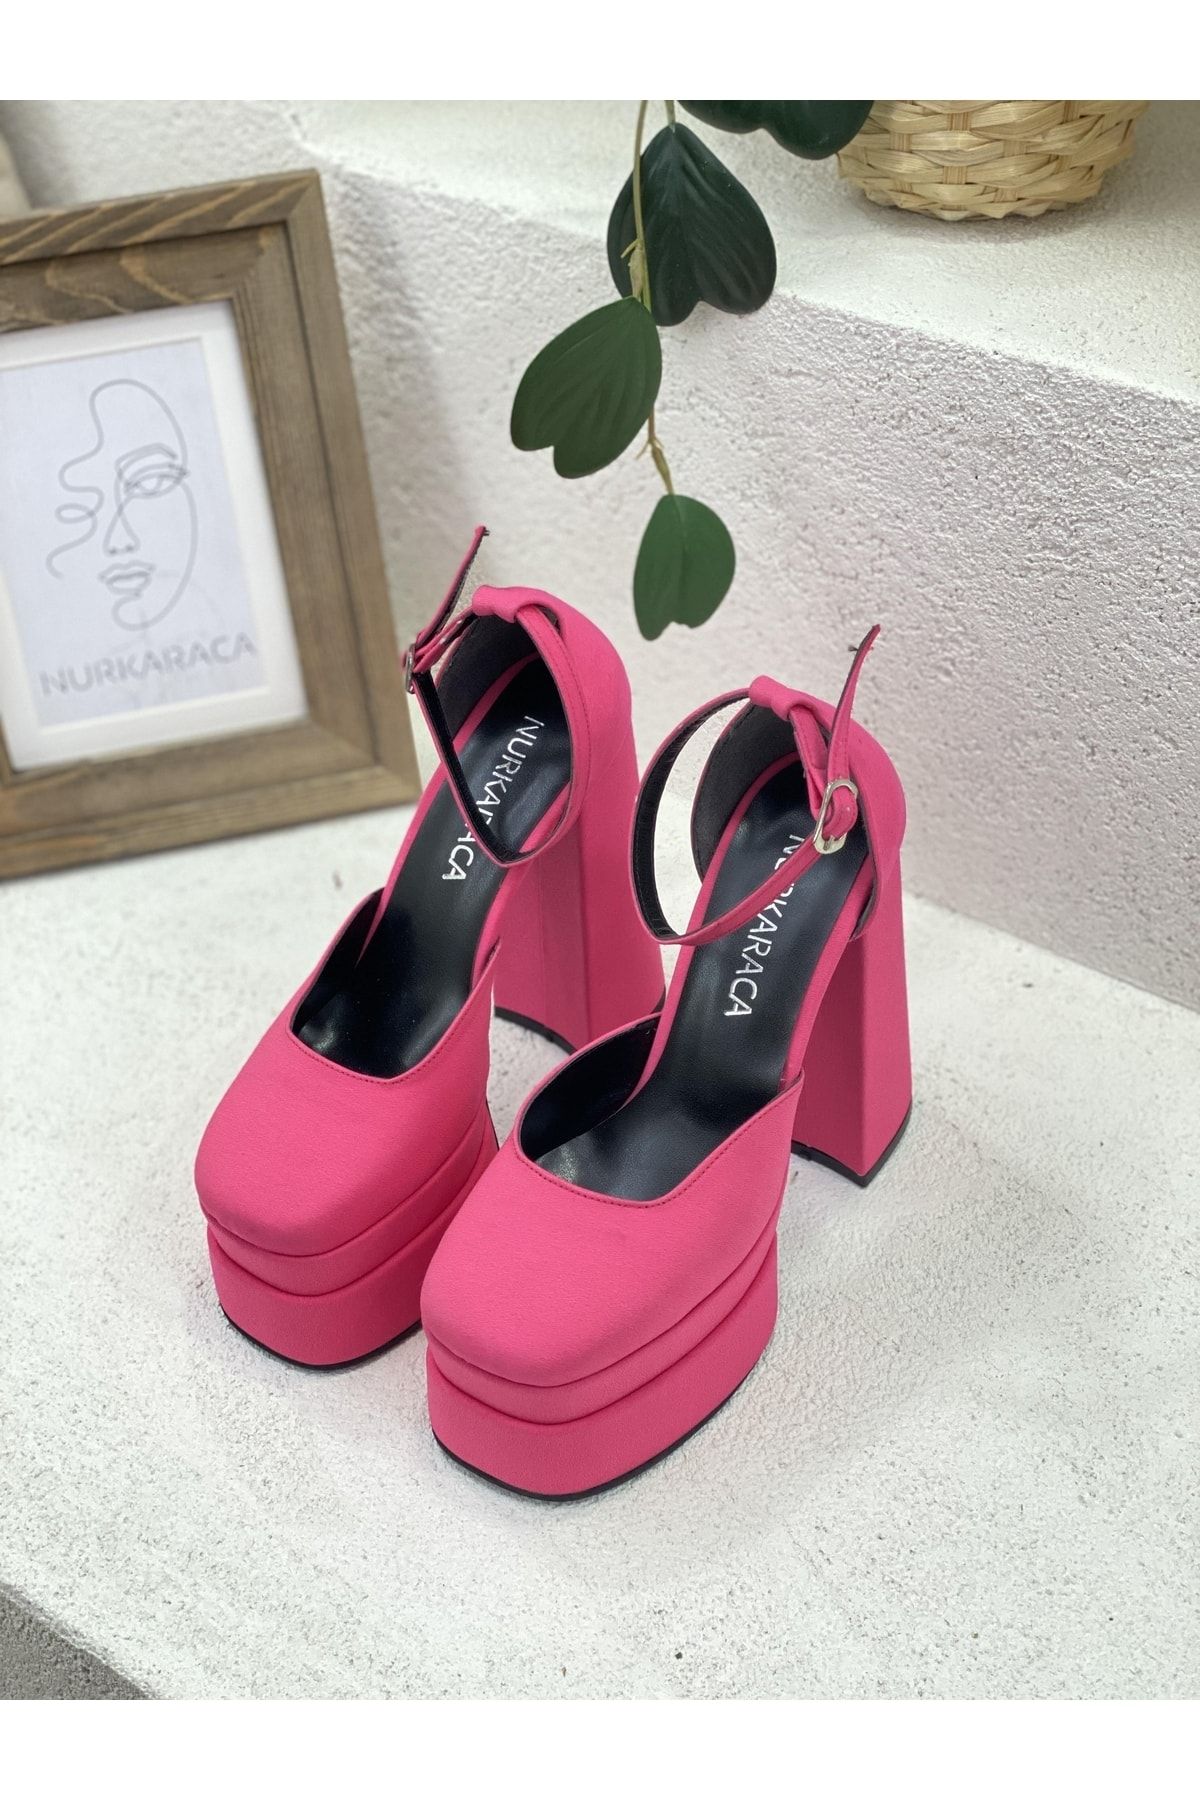 NUR KARACA Çift Platform Yarım Açık Ayakkabı 15cm Topuklu Ayakkabı Kadın